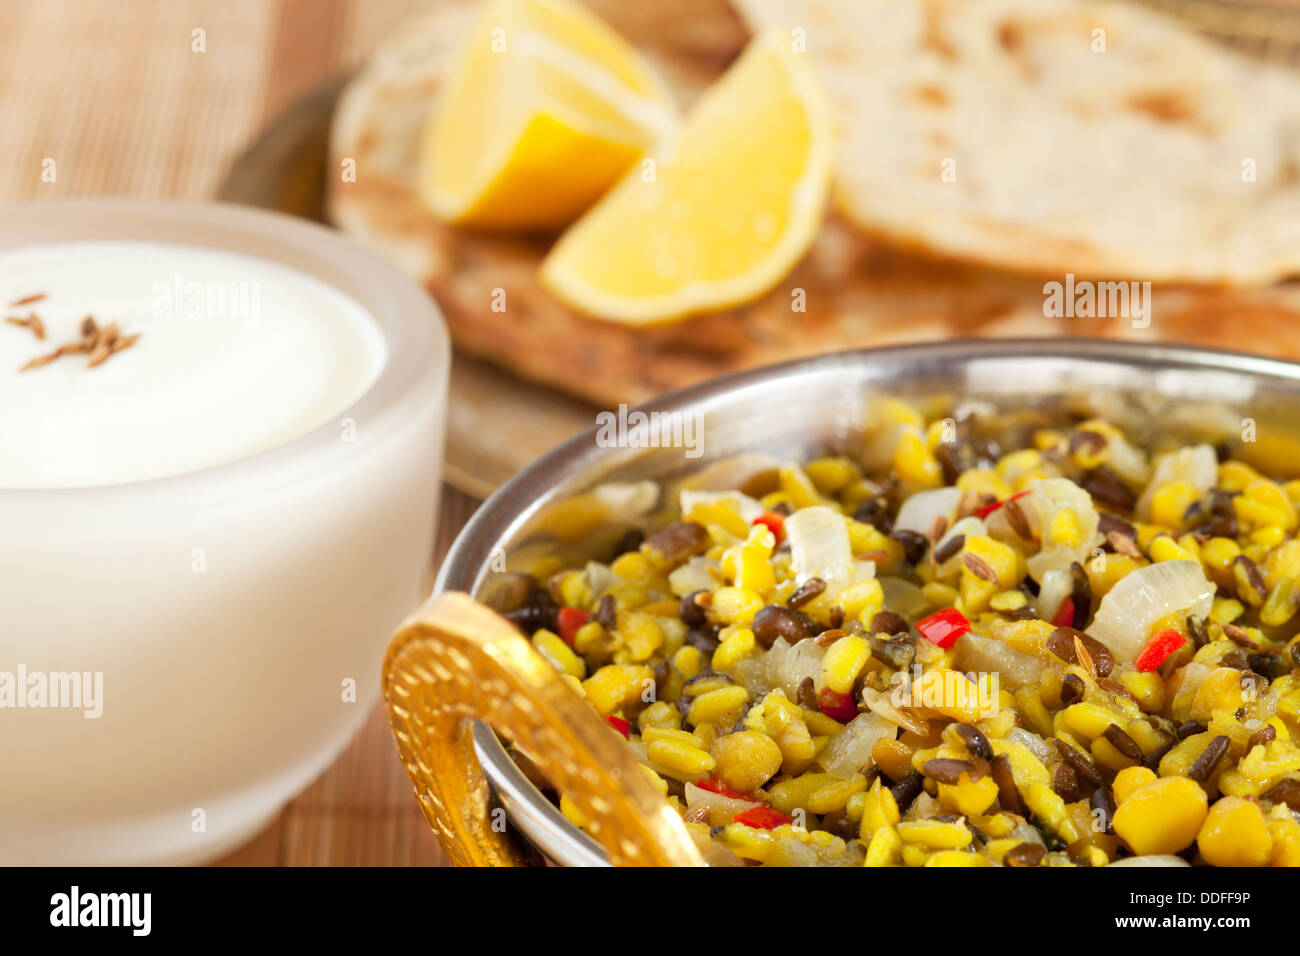 La nourriture végétarienne indienne Dhal - un bol de dhal indien ou dal faits de channa dhal et urid dhal, avec du pain naan et le yogourt. Banque D'Images